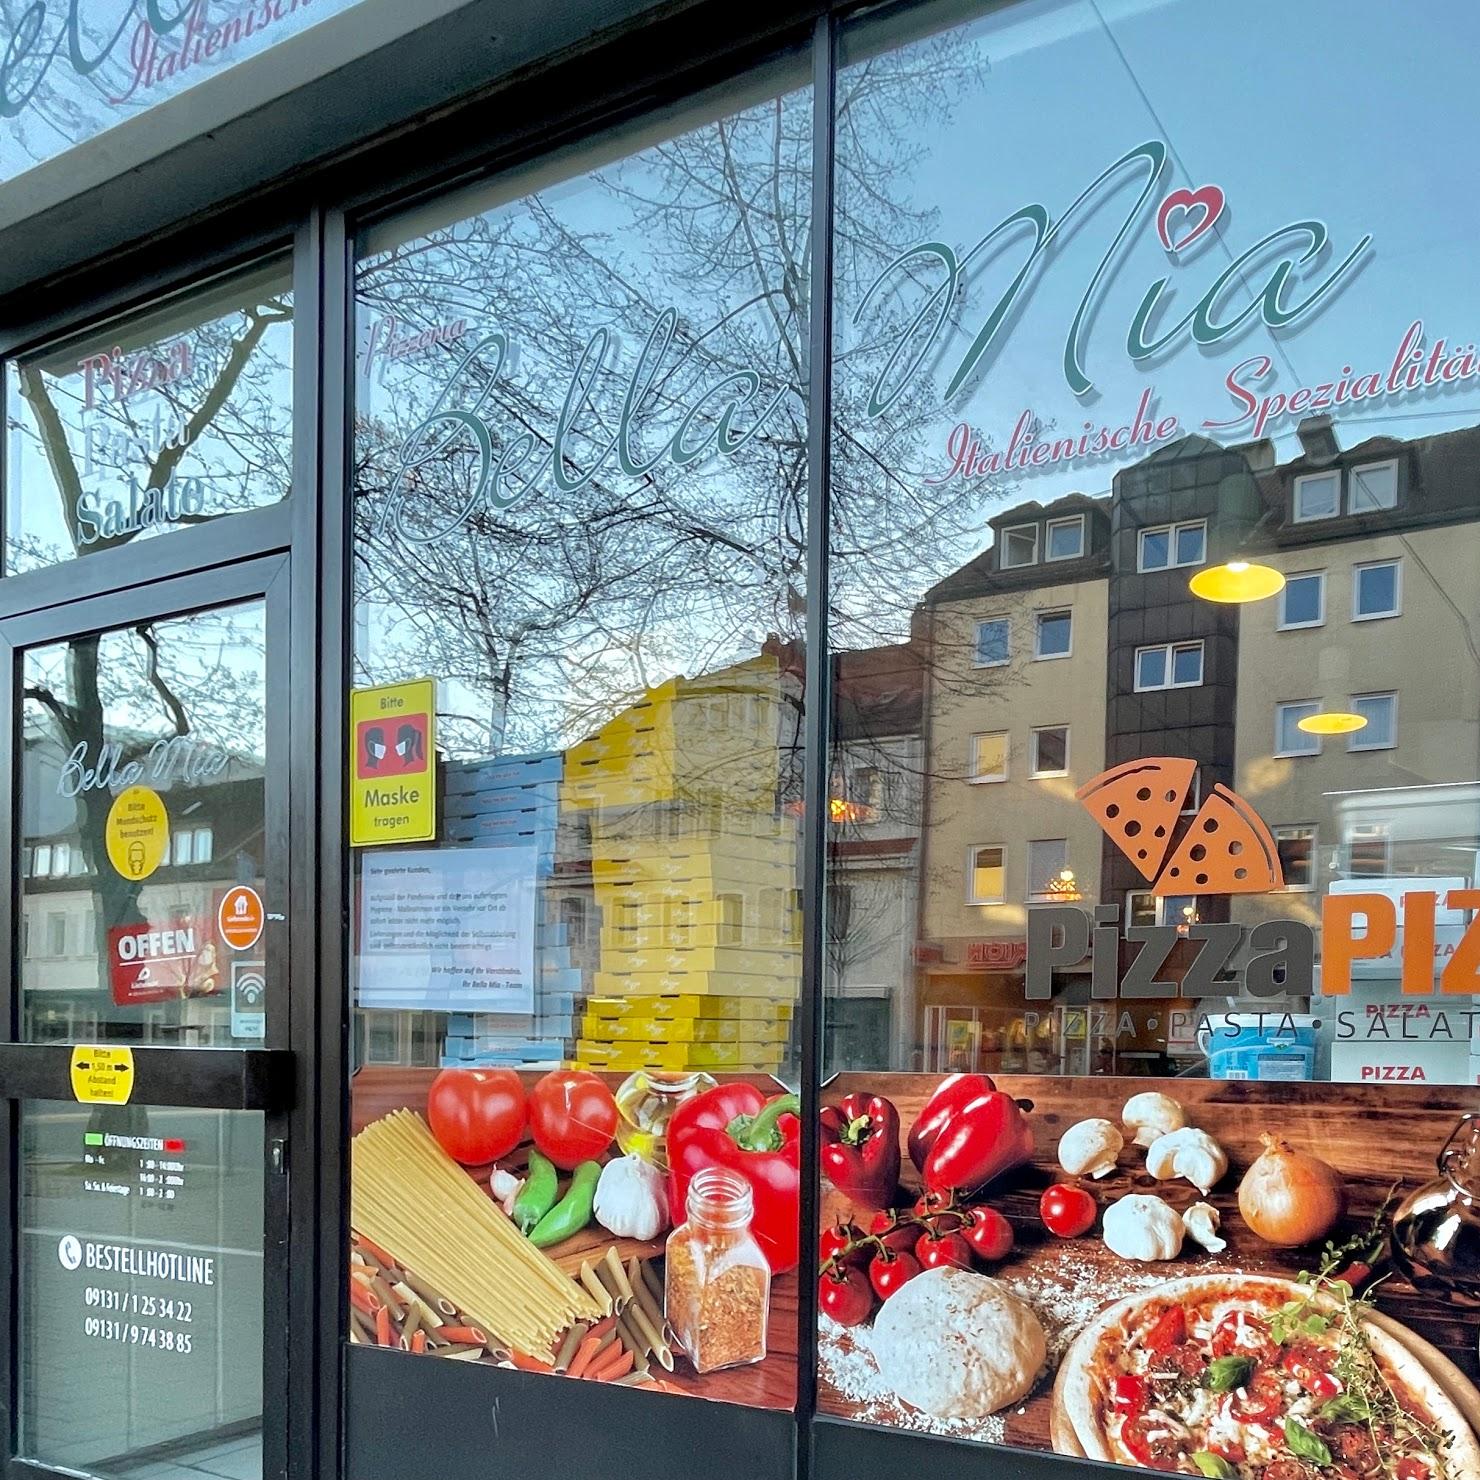 Restaurant "Pizza Bella Mia in Erlangen" in Erlangen